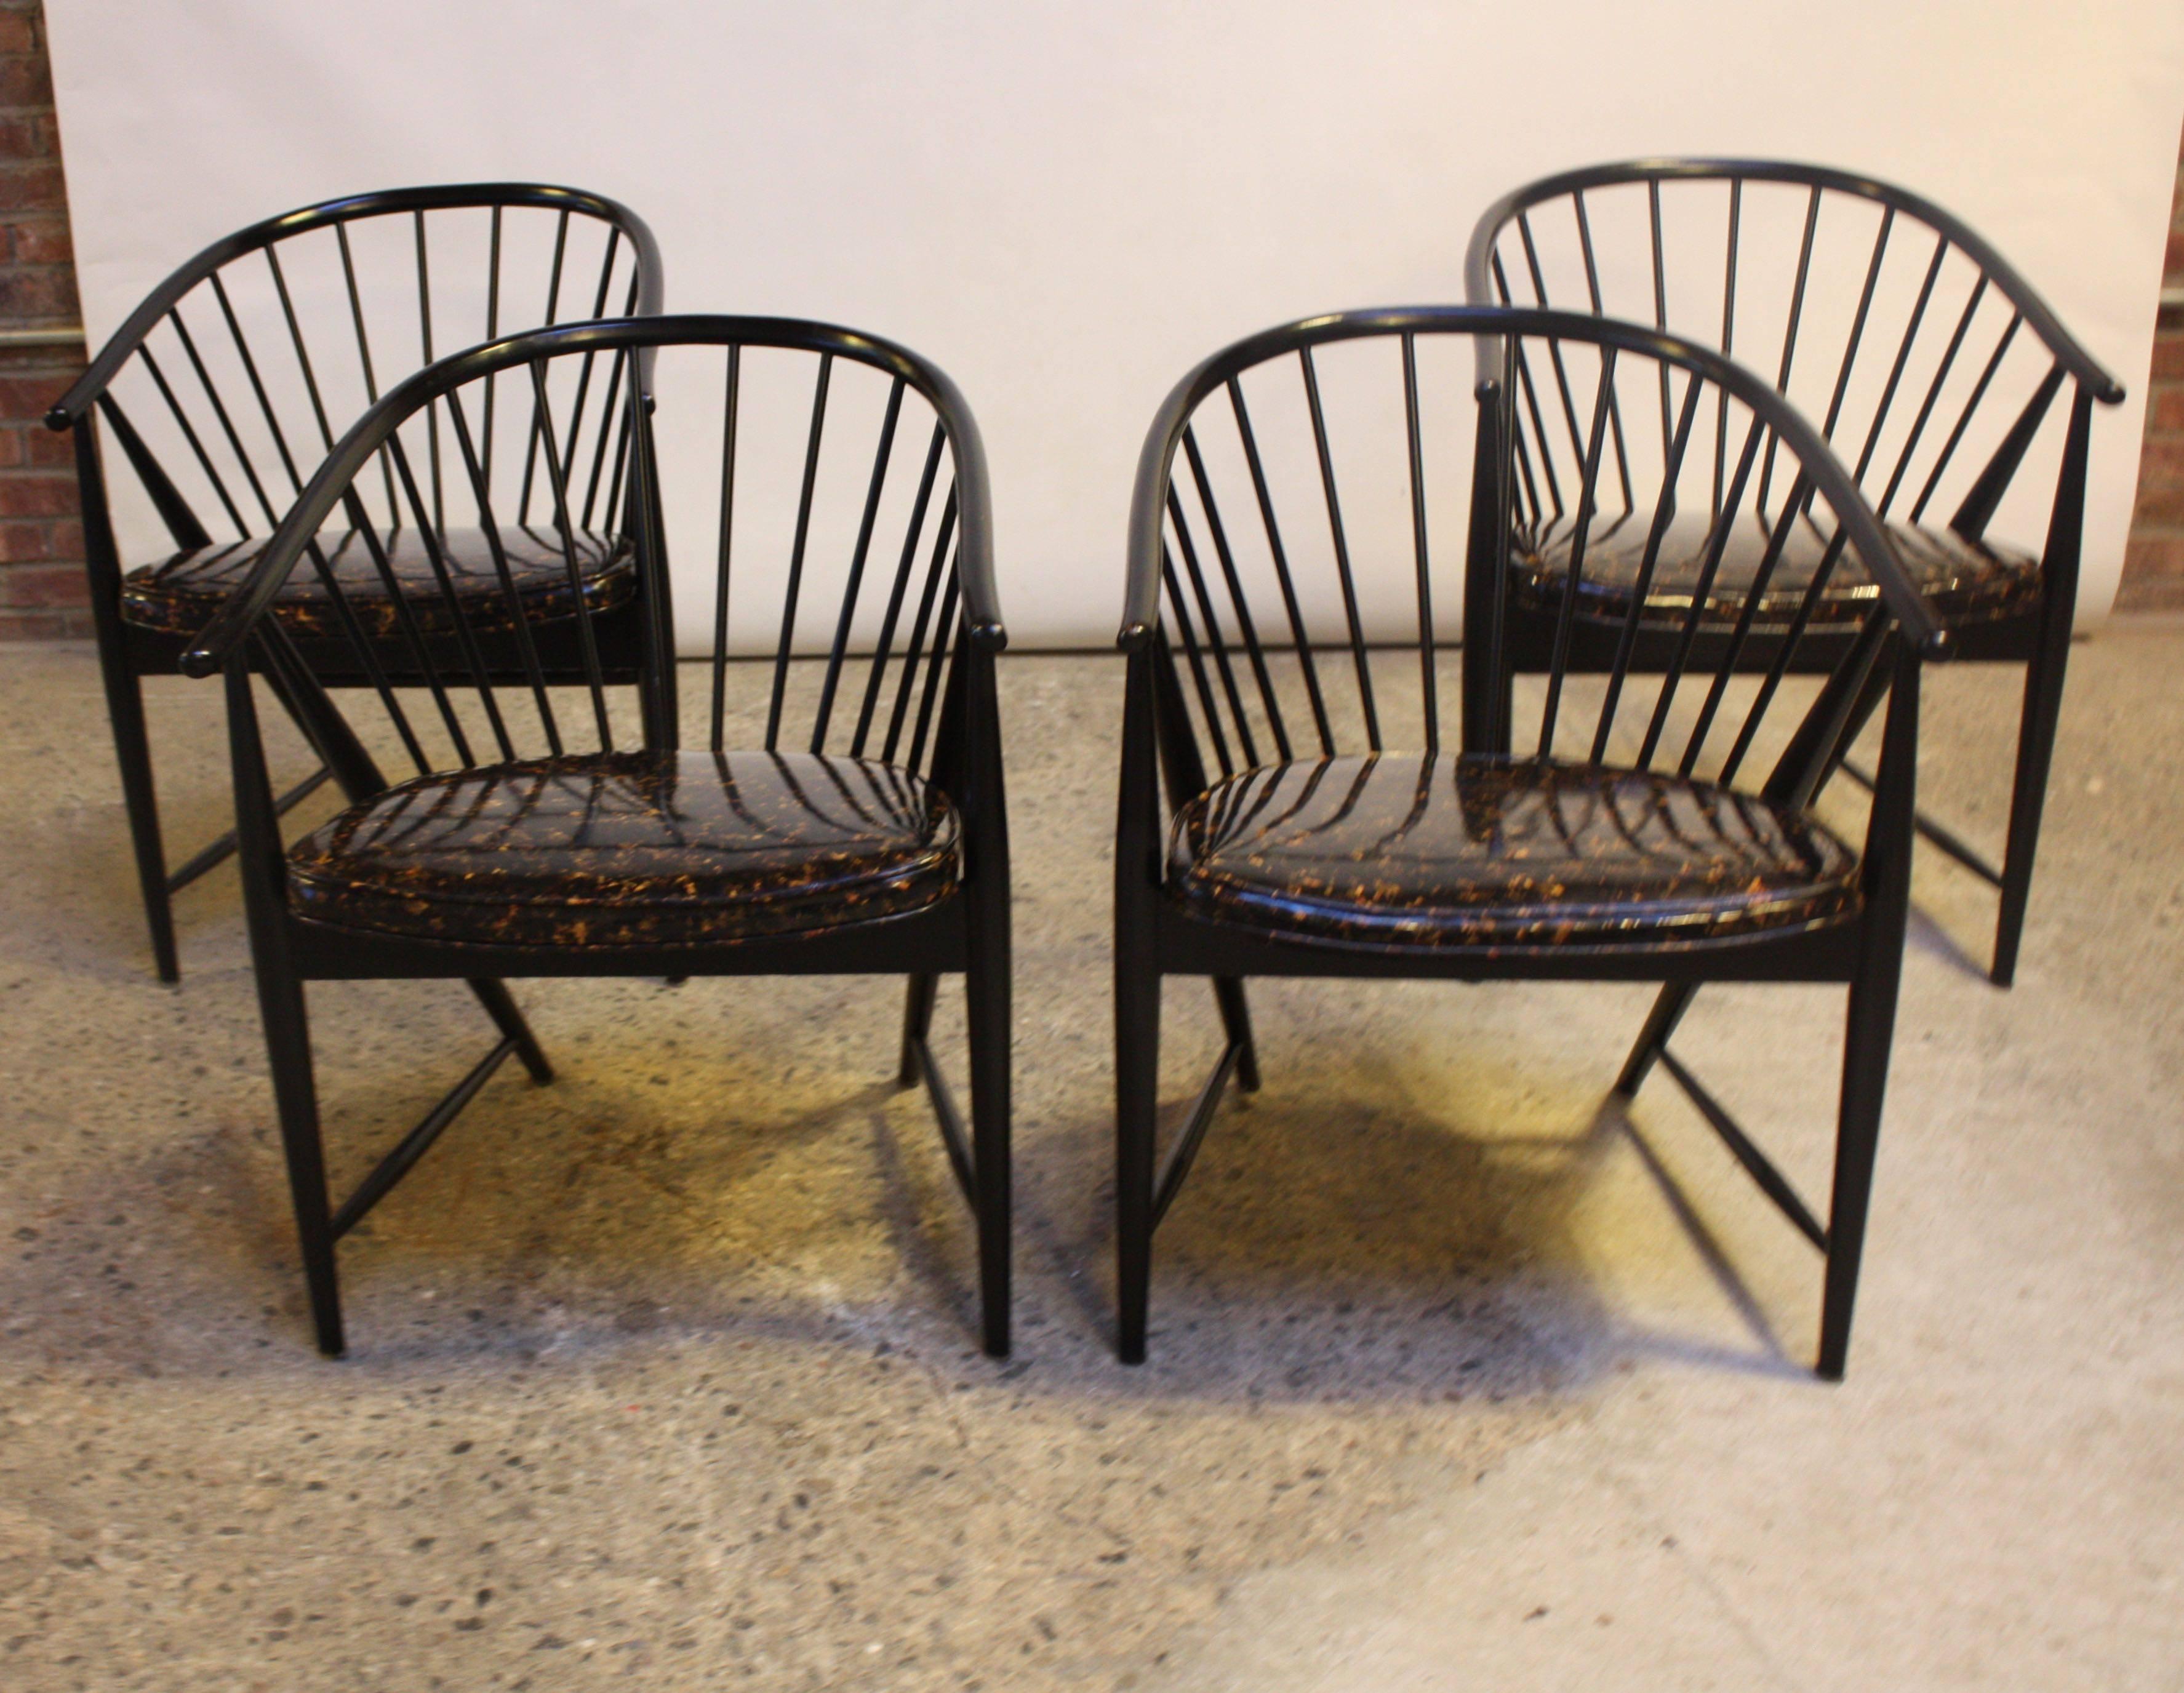 Diese Sonna Rosen 'Sulfjadern' oder 'Sun Feathers' Sessel sind in sehr gutem, konservativ restauriertem Zustand und haben noch die originalen 'Ölfleck'-Vinylsitze. Der Stuhl wurde 1948 von Rosen entworfen, und diese Stühle sind Beispiele aus den